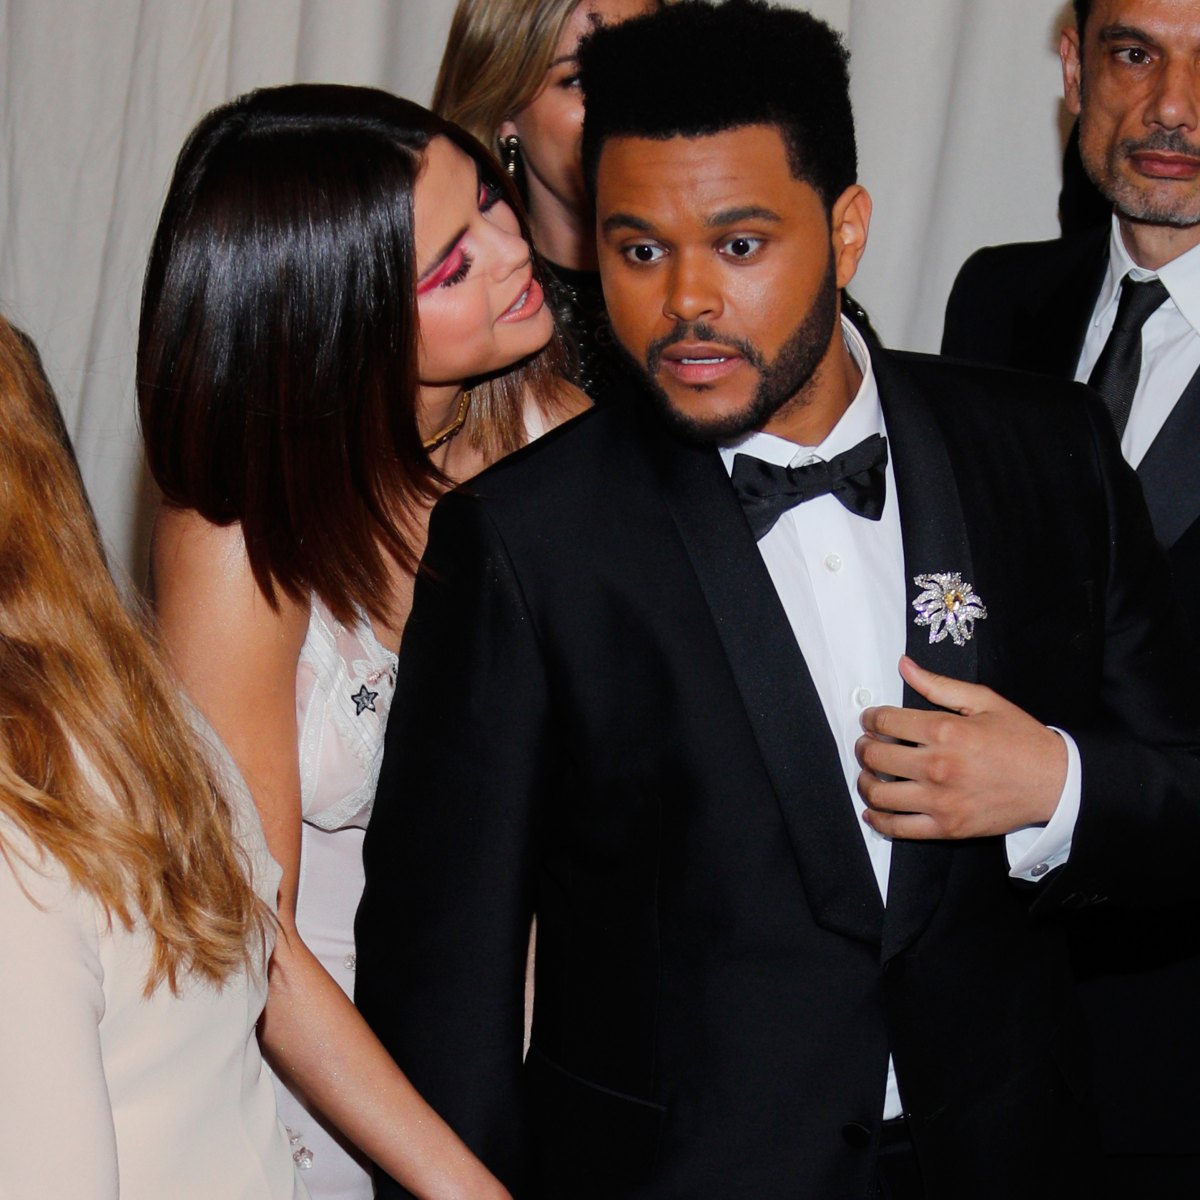 Met Gala 2017: Selena Gomez, The Weeknd debut as couple 